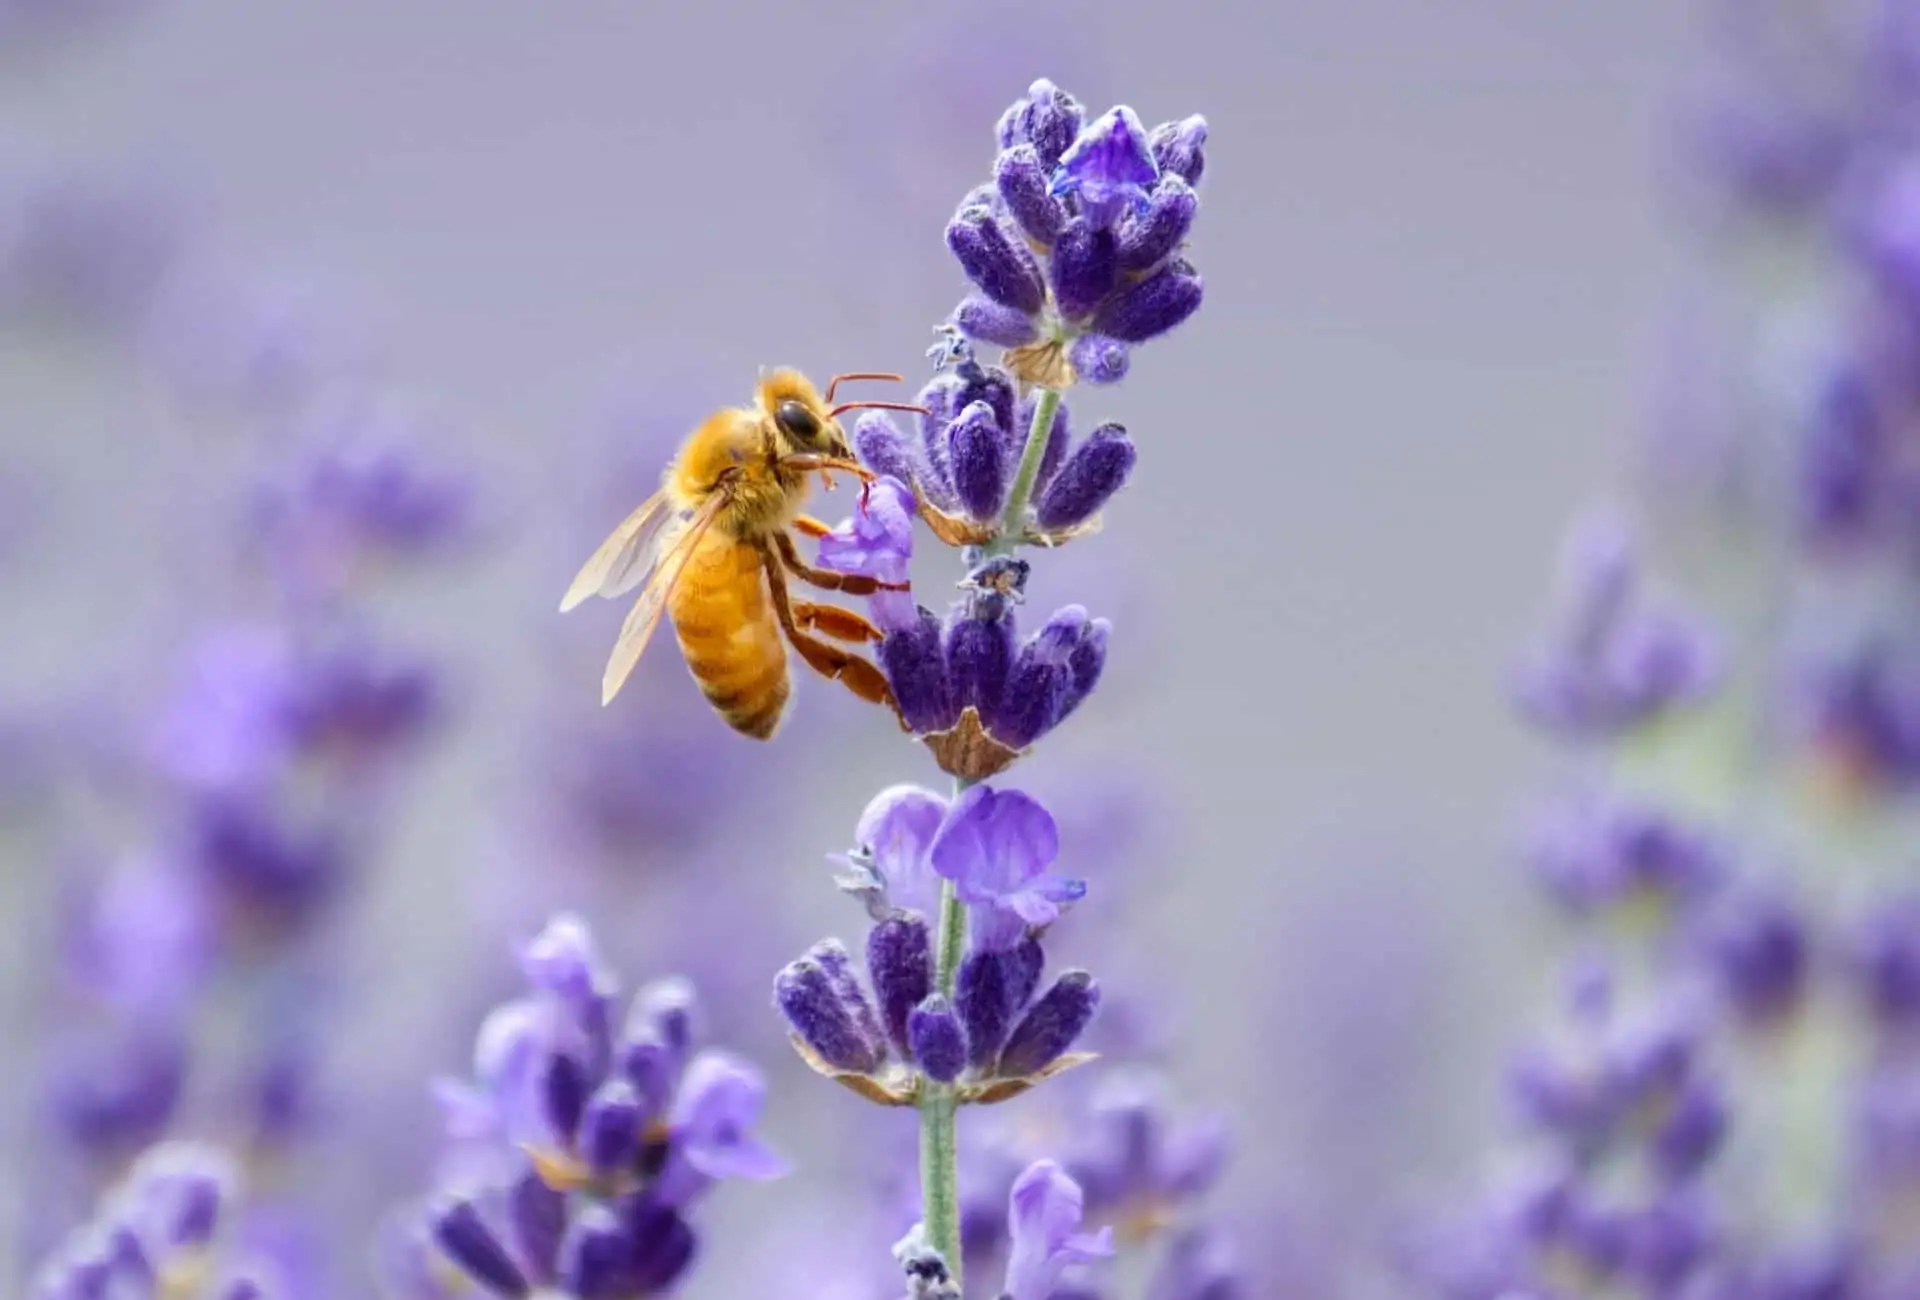 Honeybee on lavender.